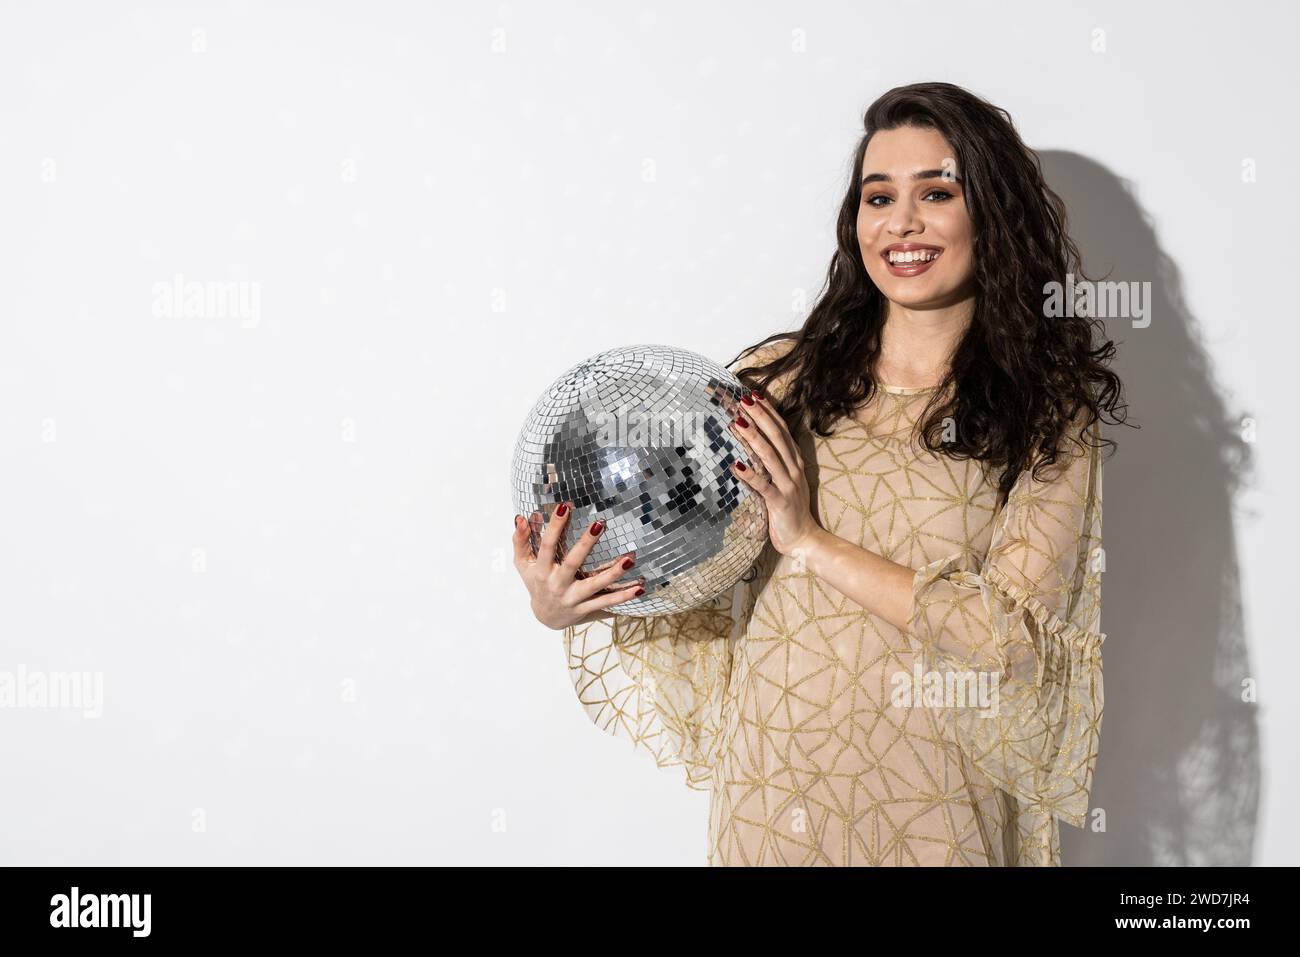 Femme heureuse portant une robe souriante tient une boule disco. Concept de fête Banque D'Images